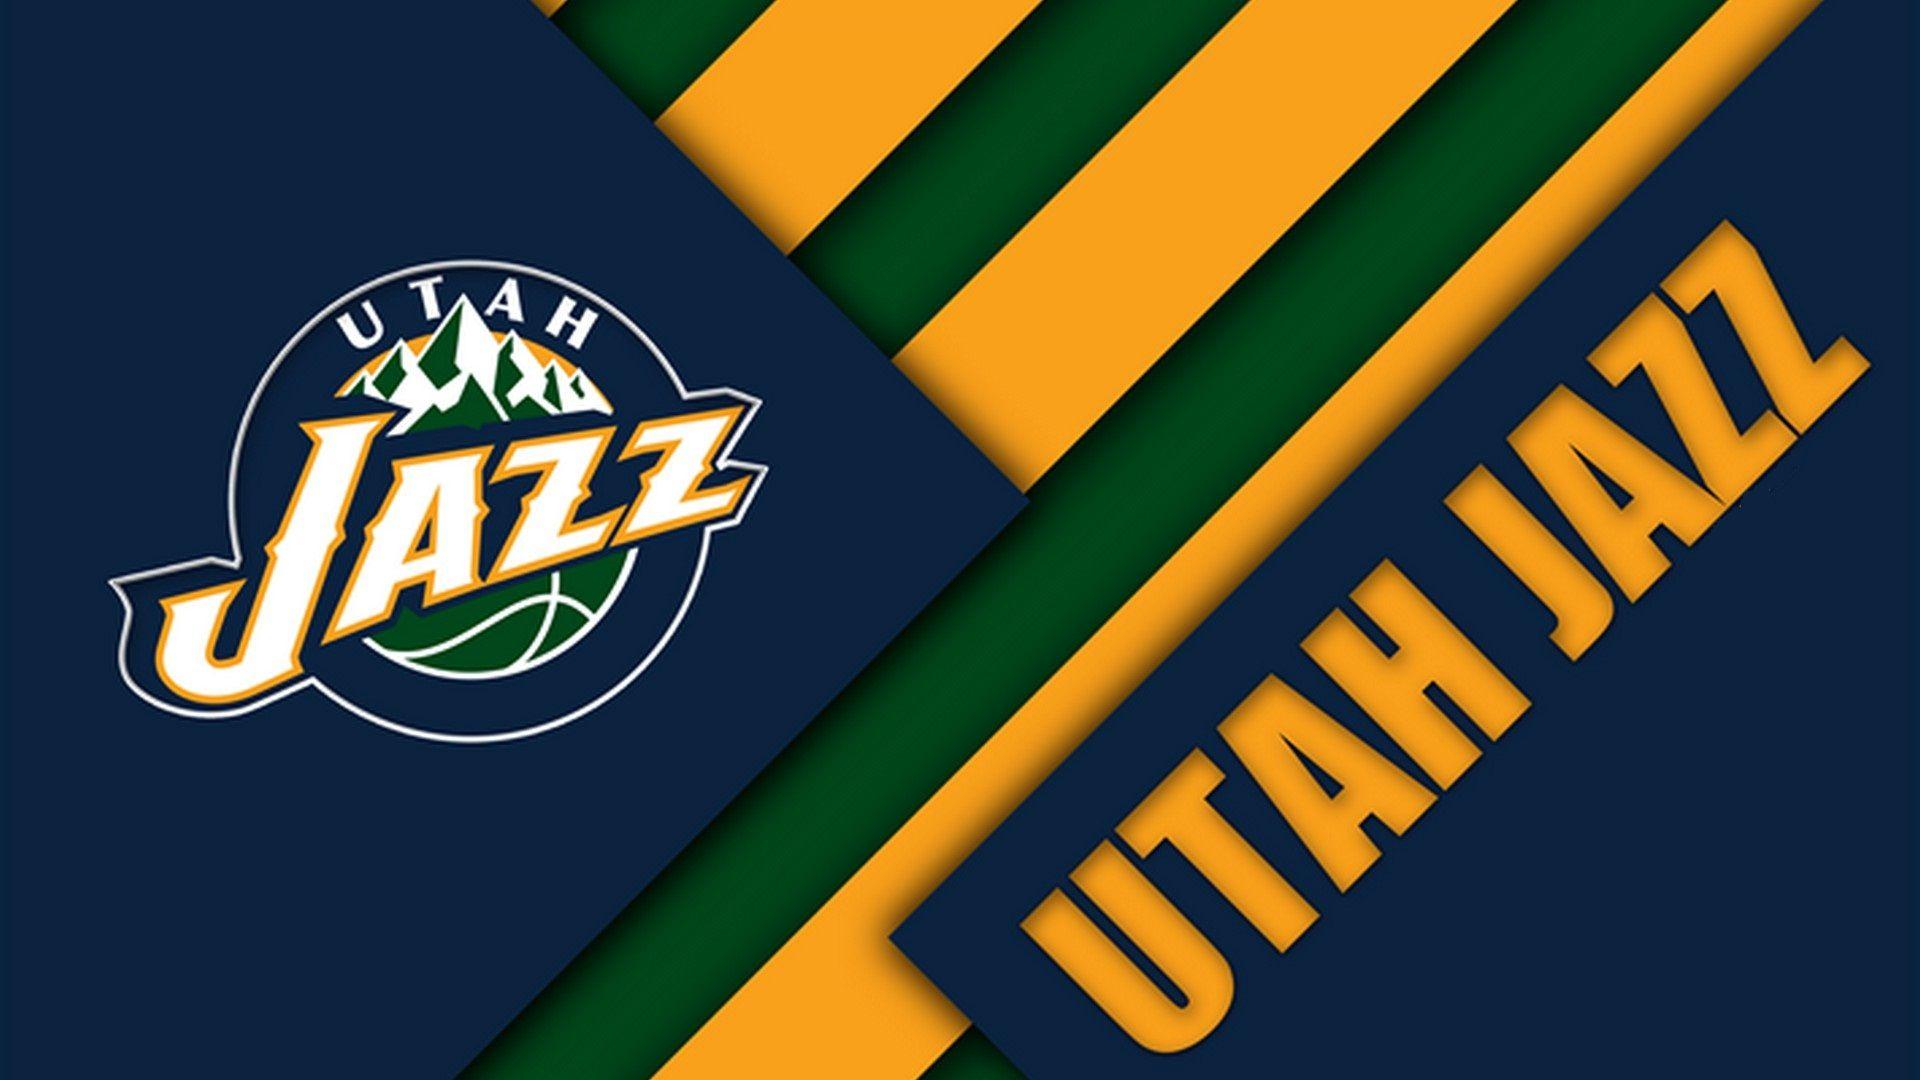 Utah Jazz Wallpaper Free Utah Jazz Background